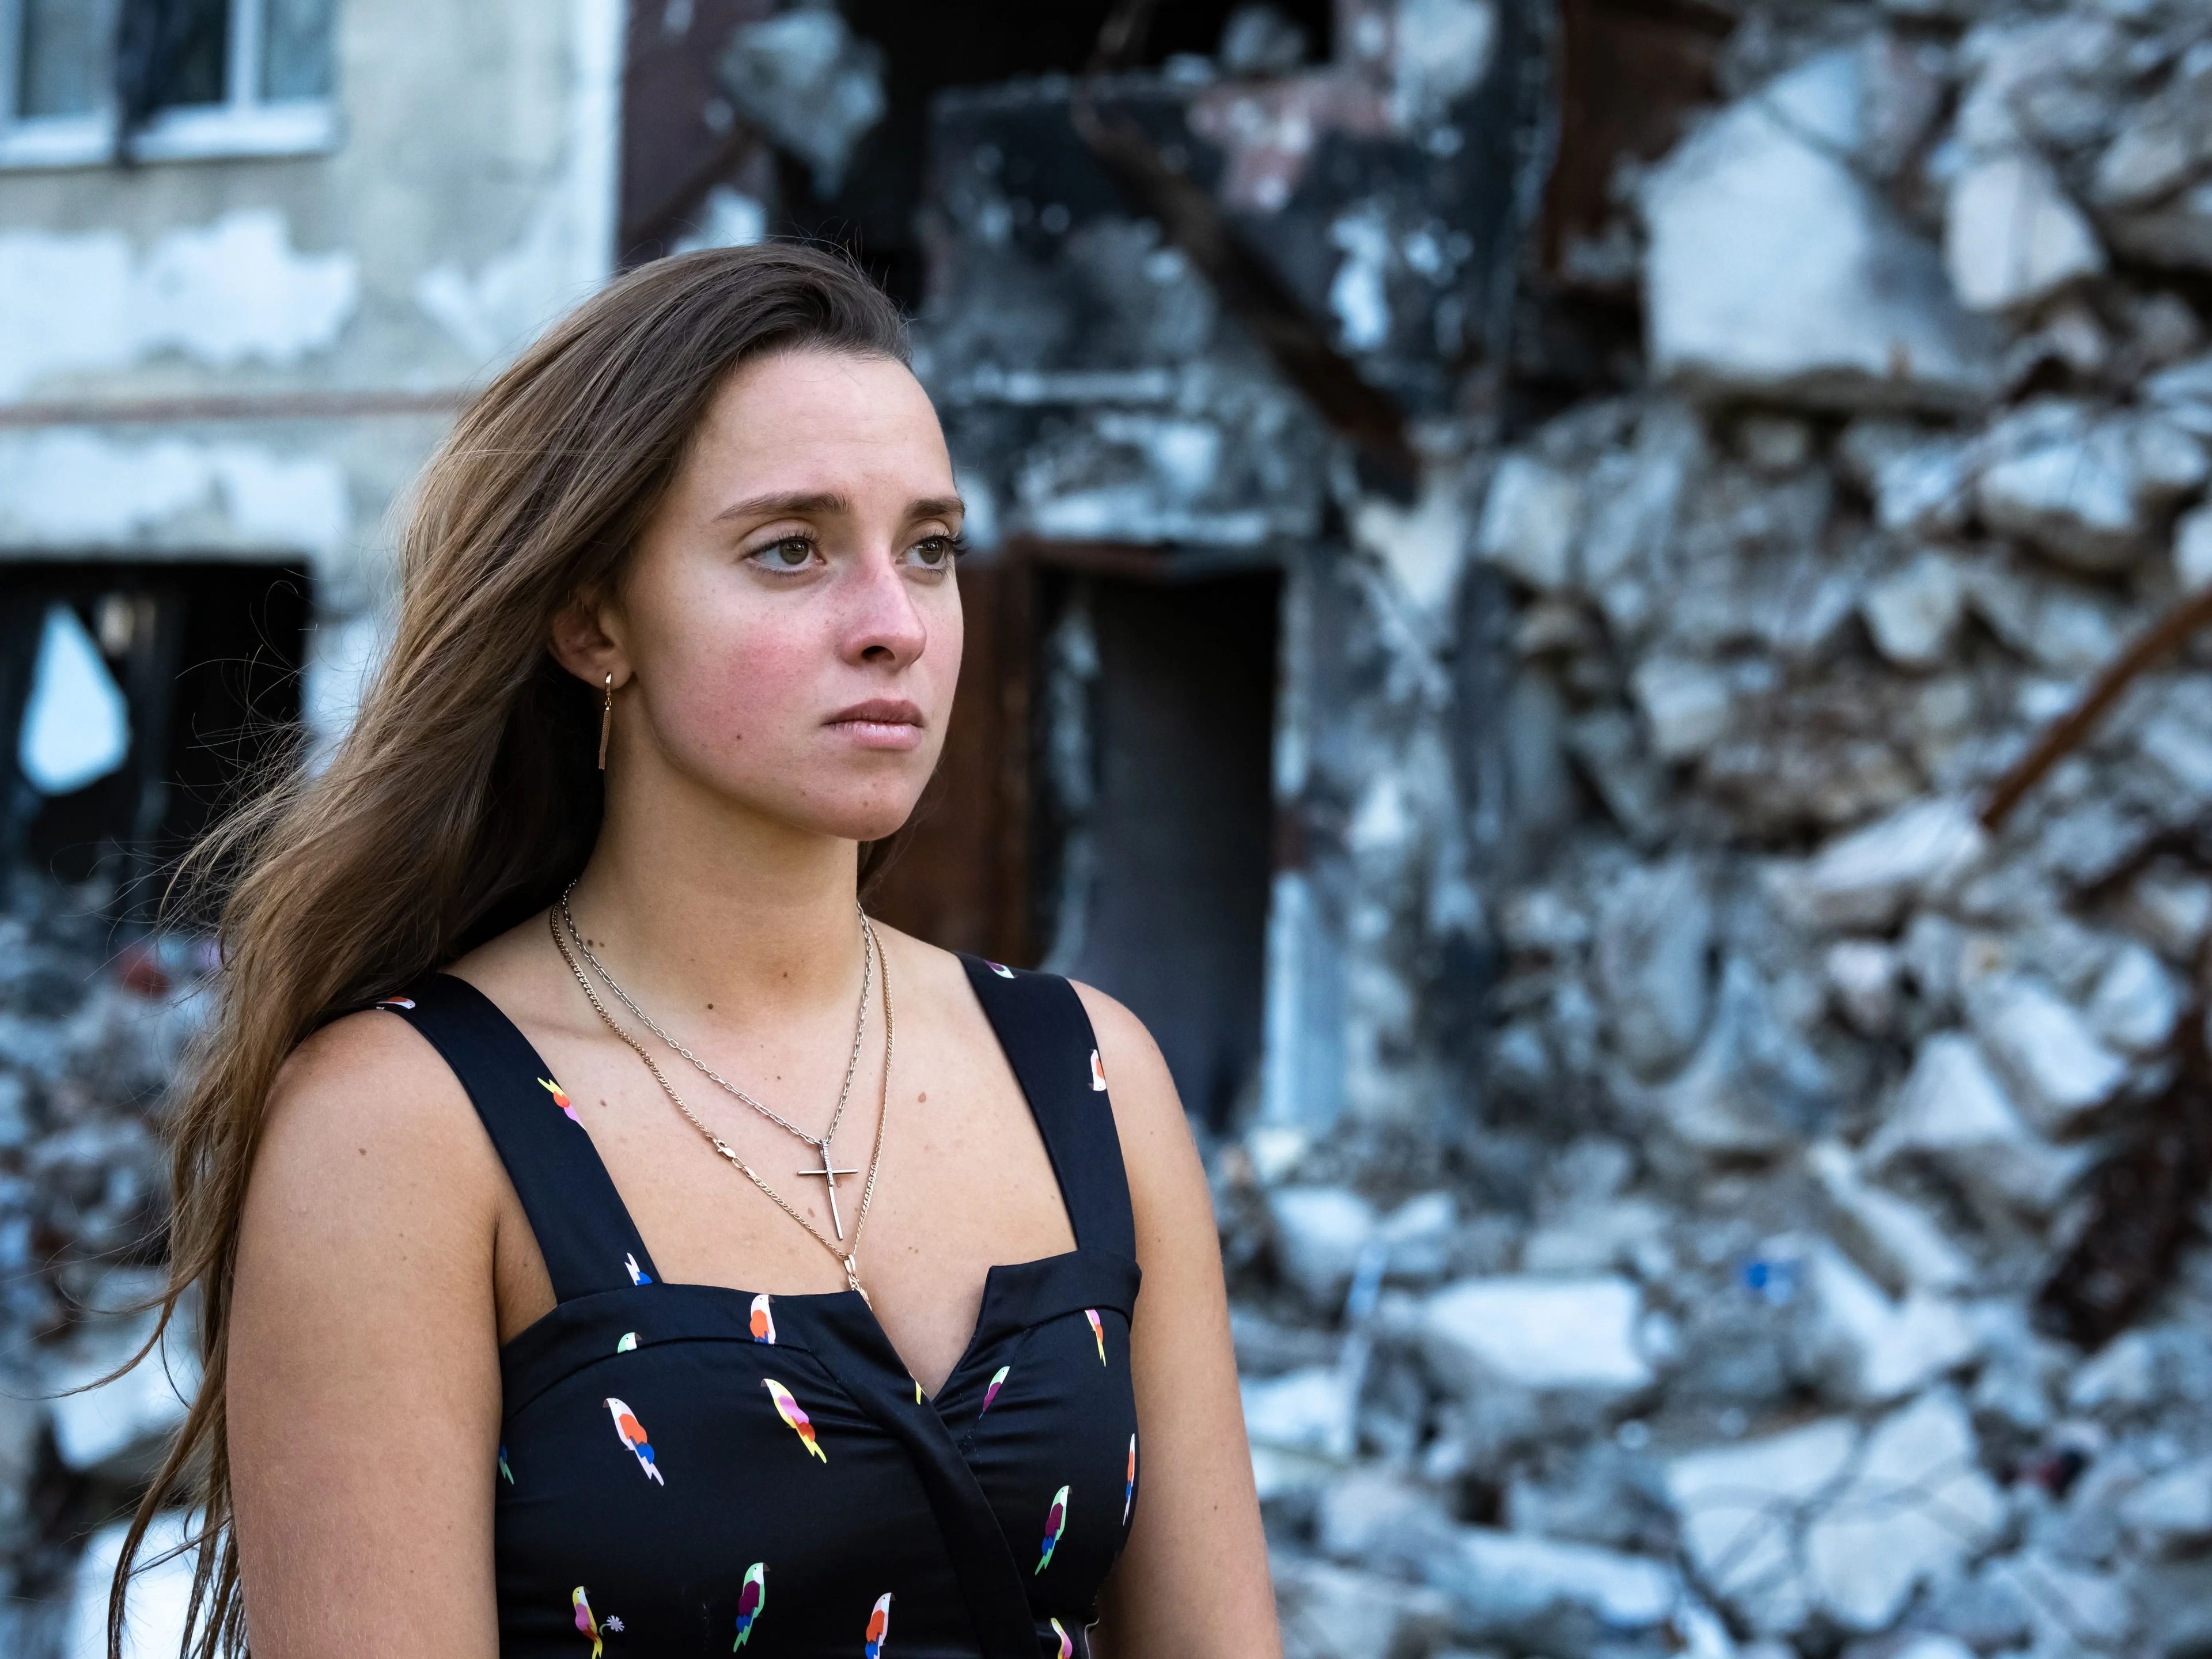 Valeriya regresó a Kharkiv irreconocibles, y las calles llenas de escombros silenciosas. Pero se negó a que Flash Dancers permaneciera cerrado.